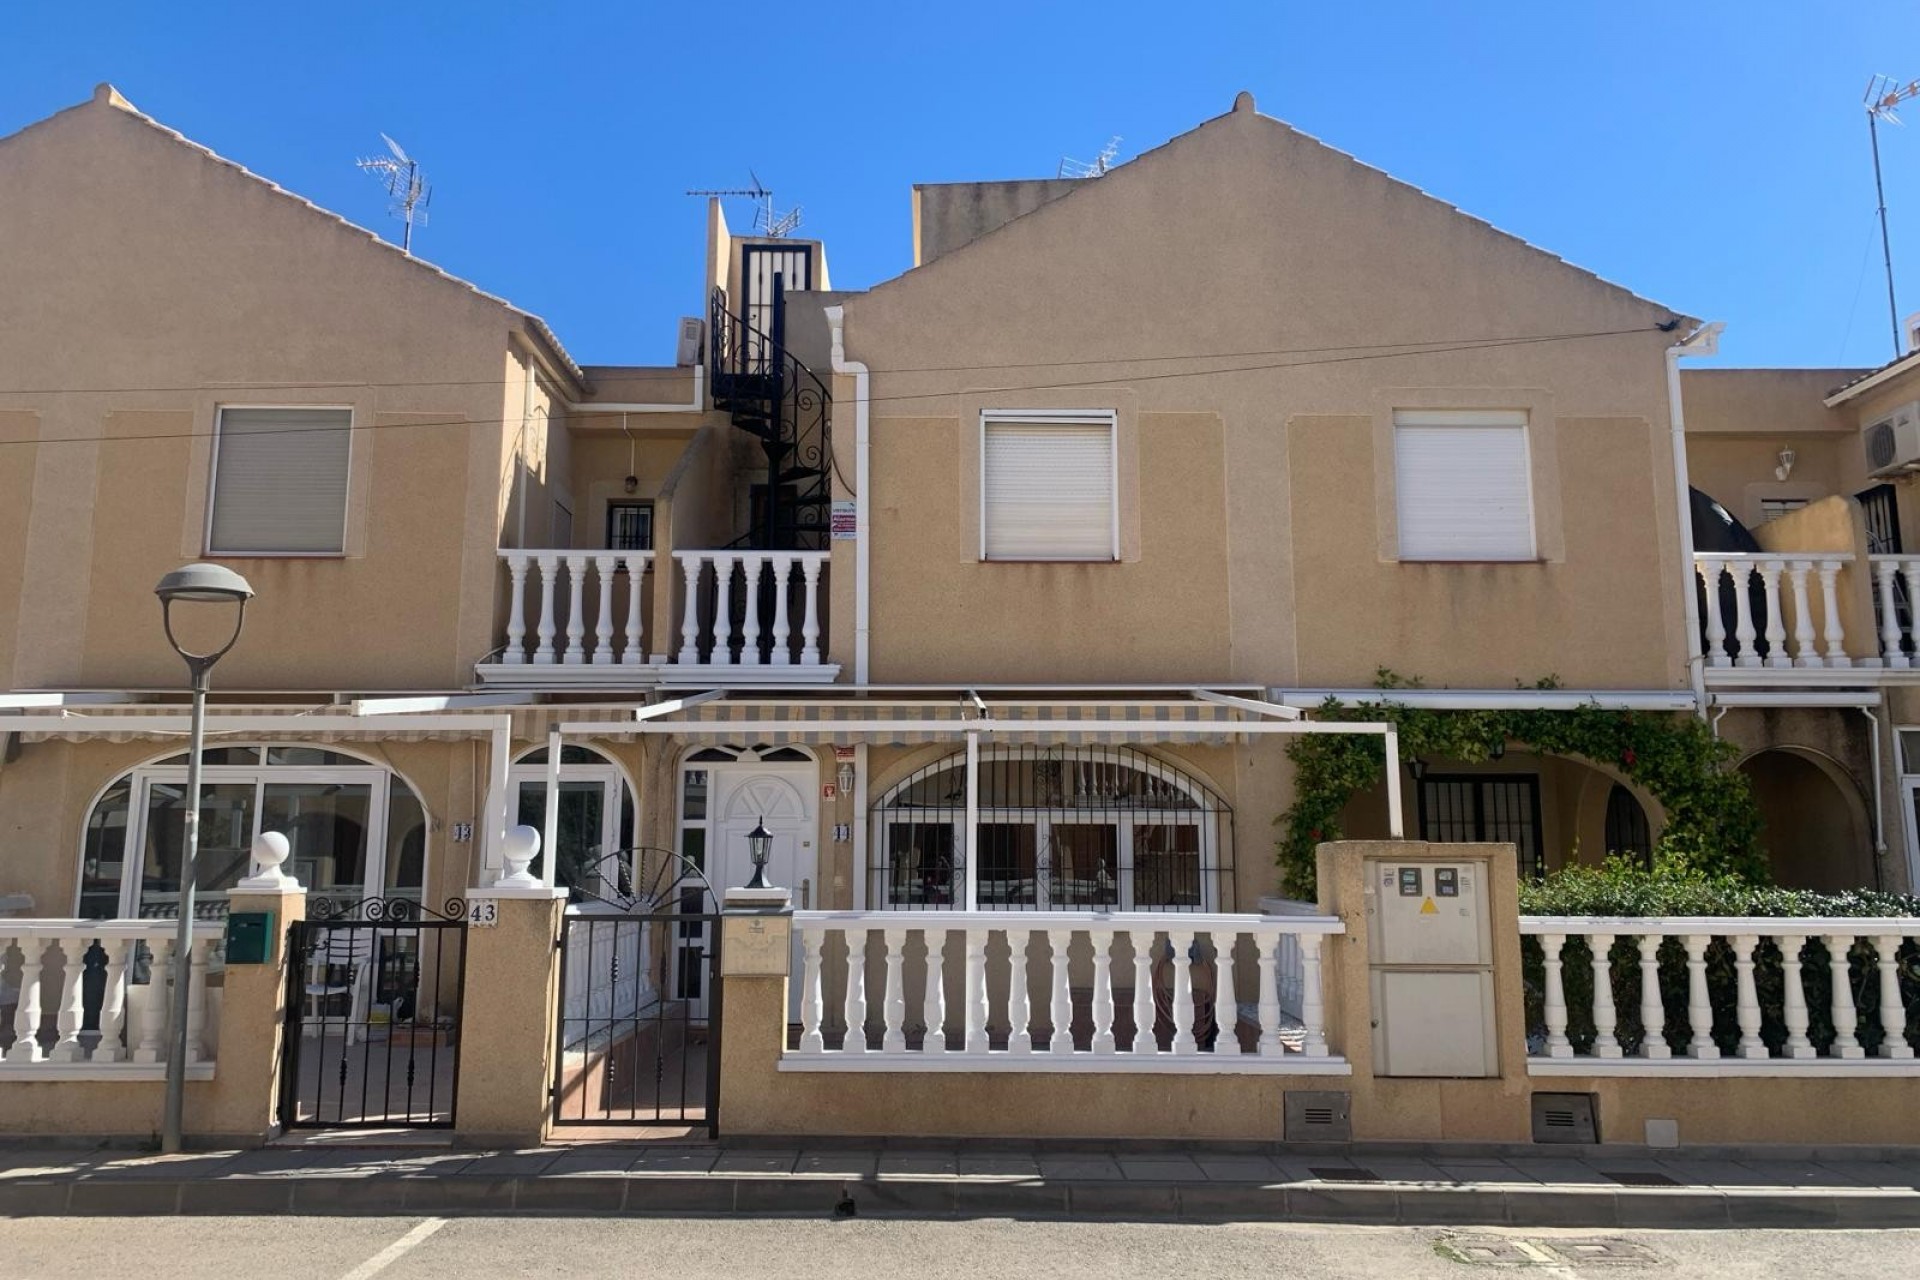 For sale: 3 bedroom house / villa in Orihuela Costa, Costa Blanca